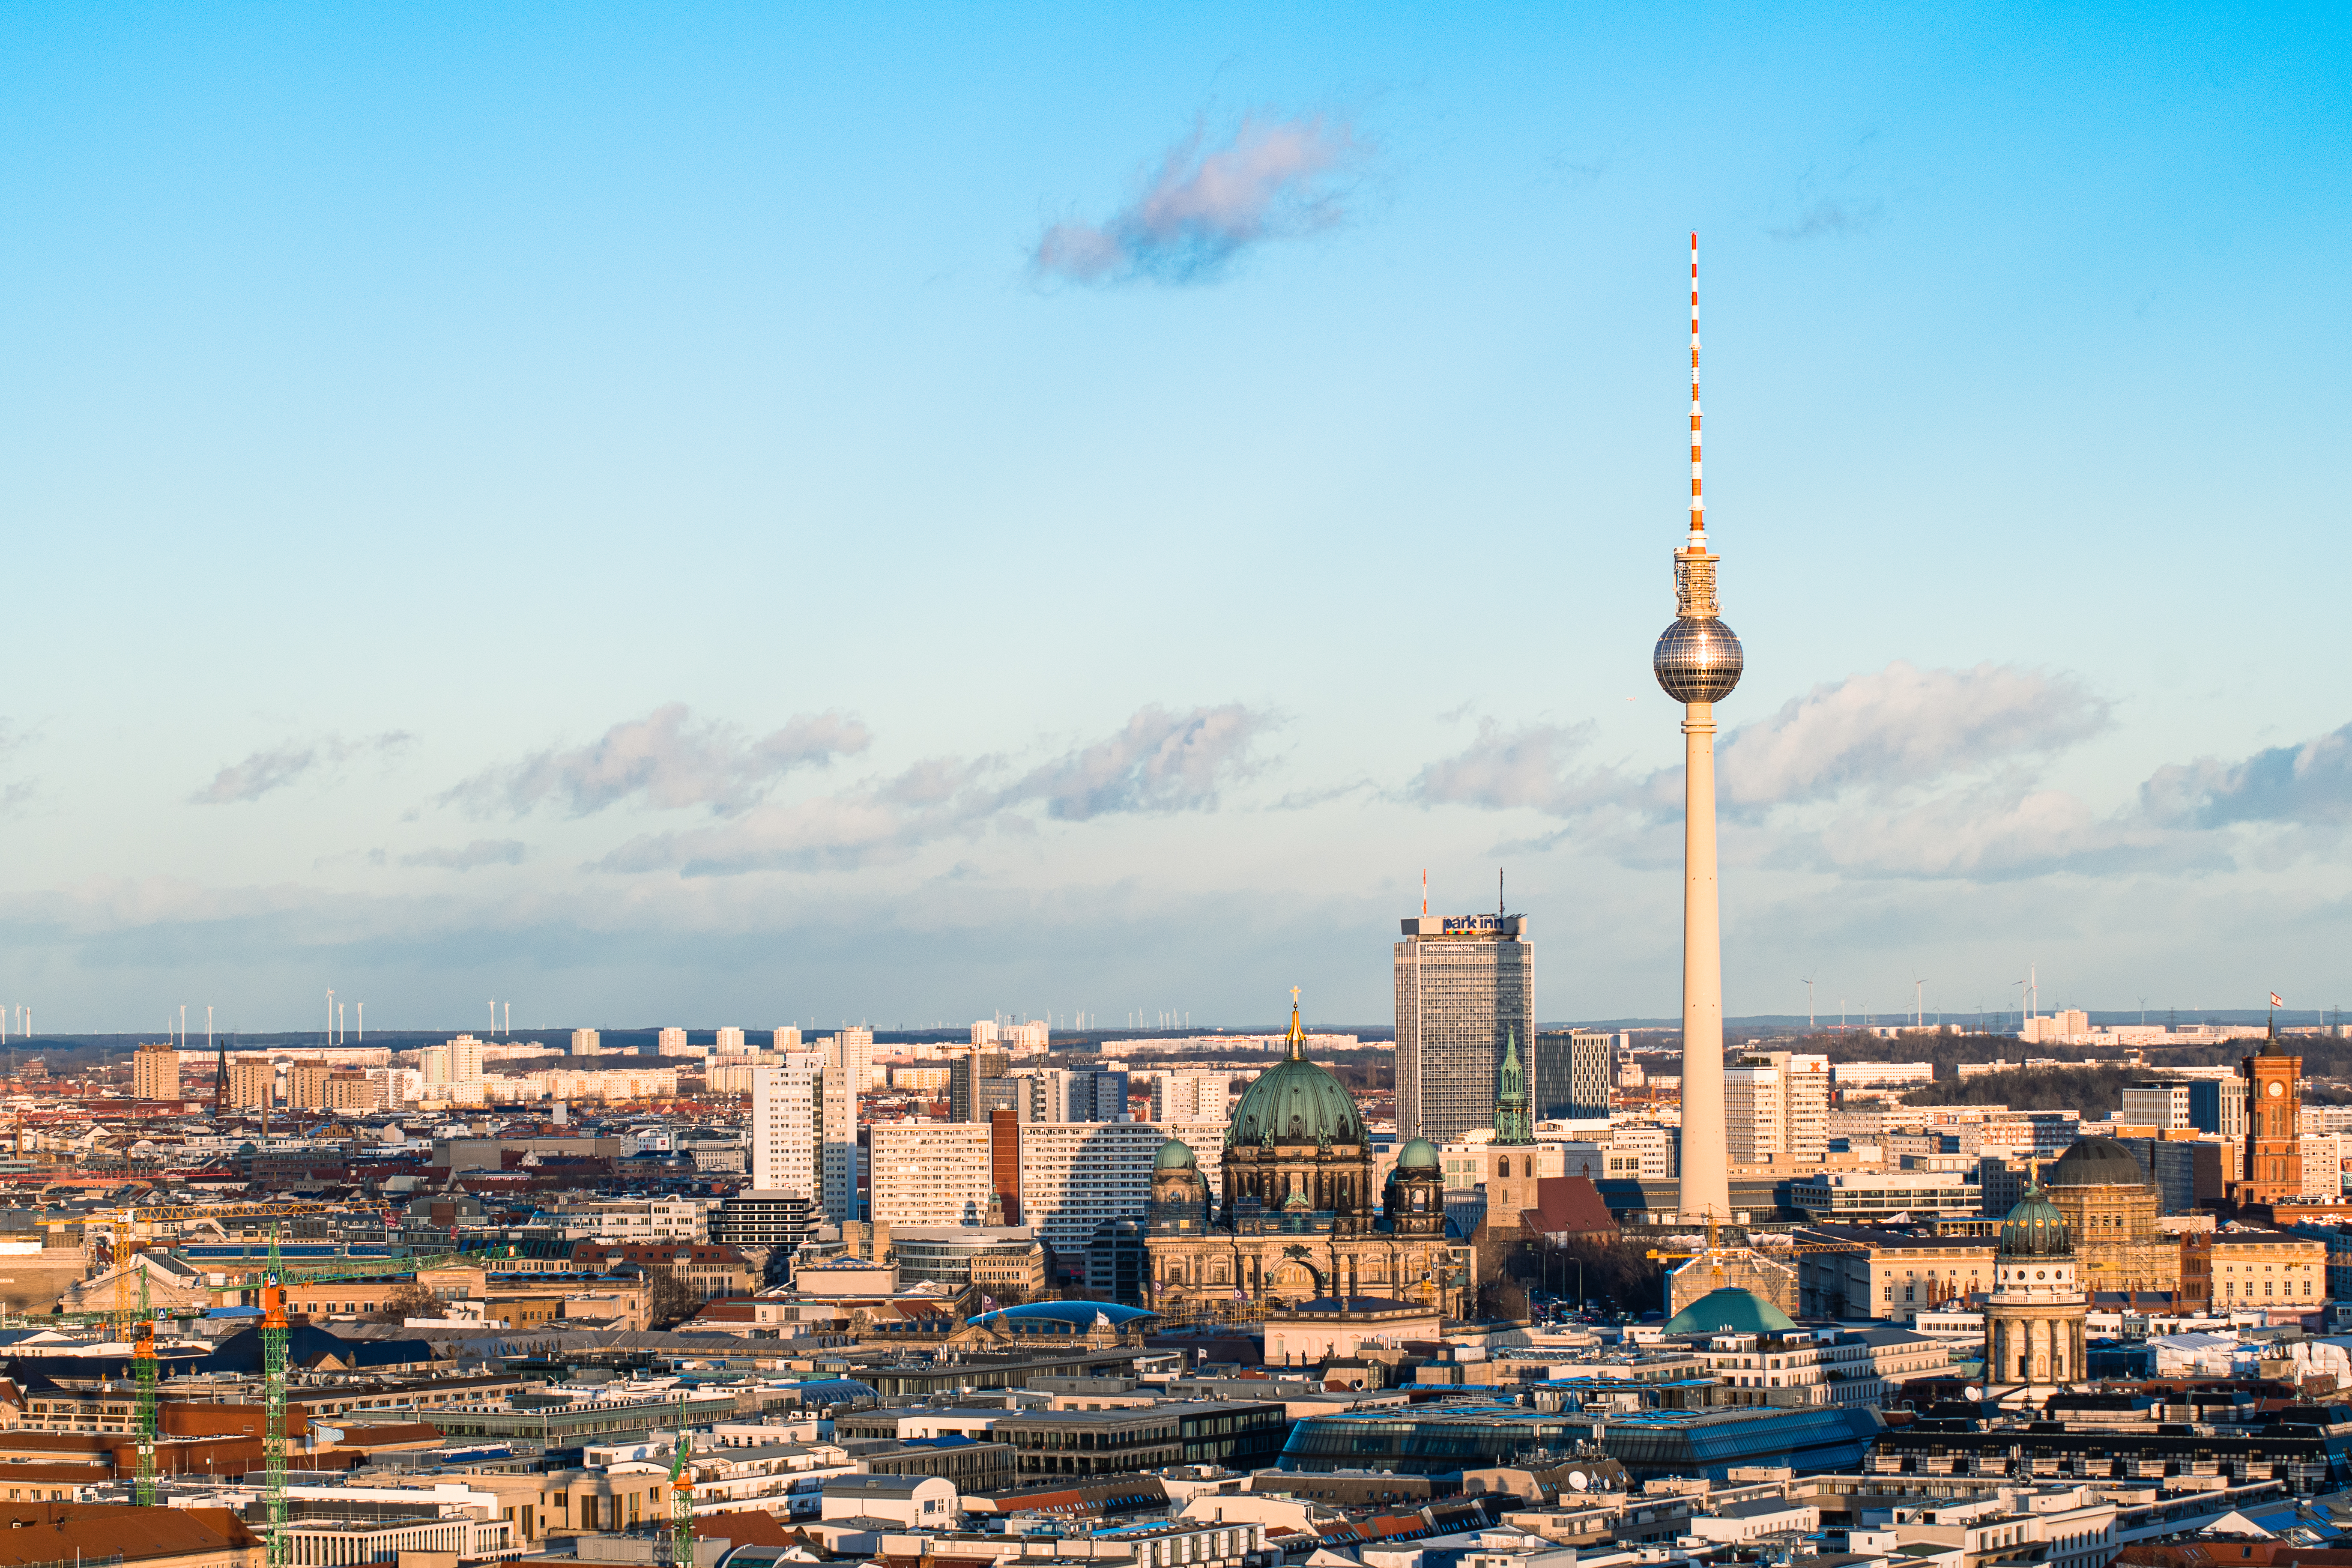 Berlin Television Tower - Berliner Fernsehturm